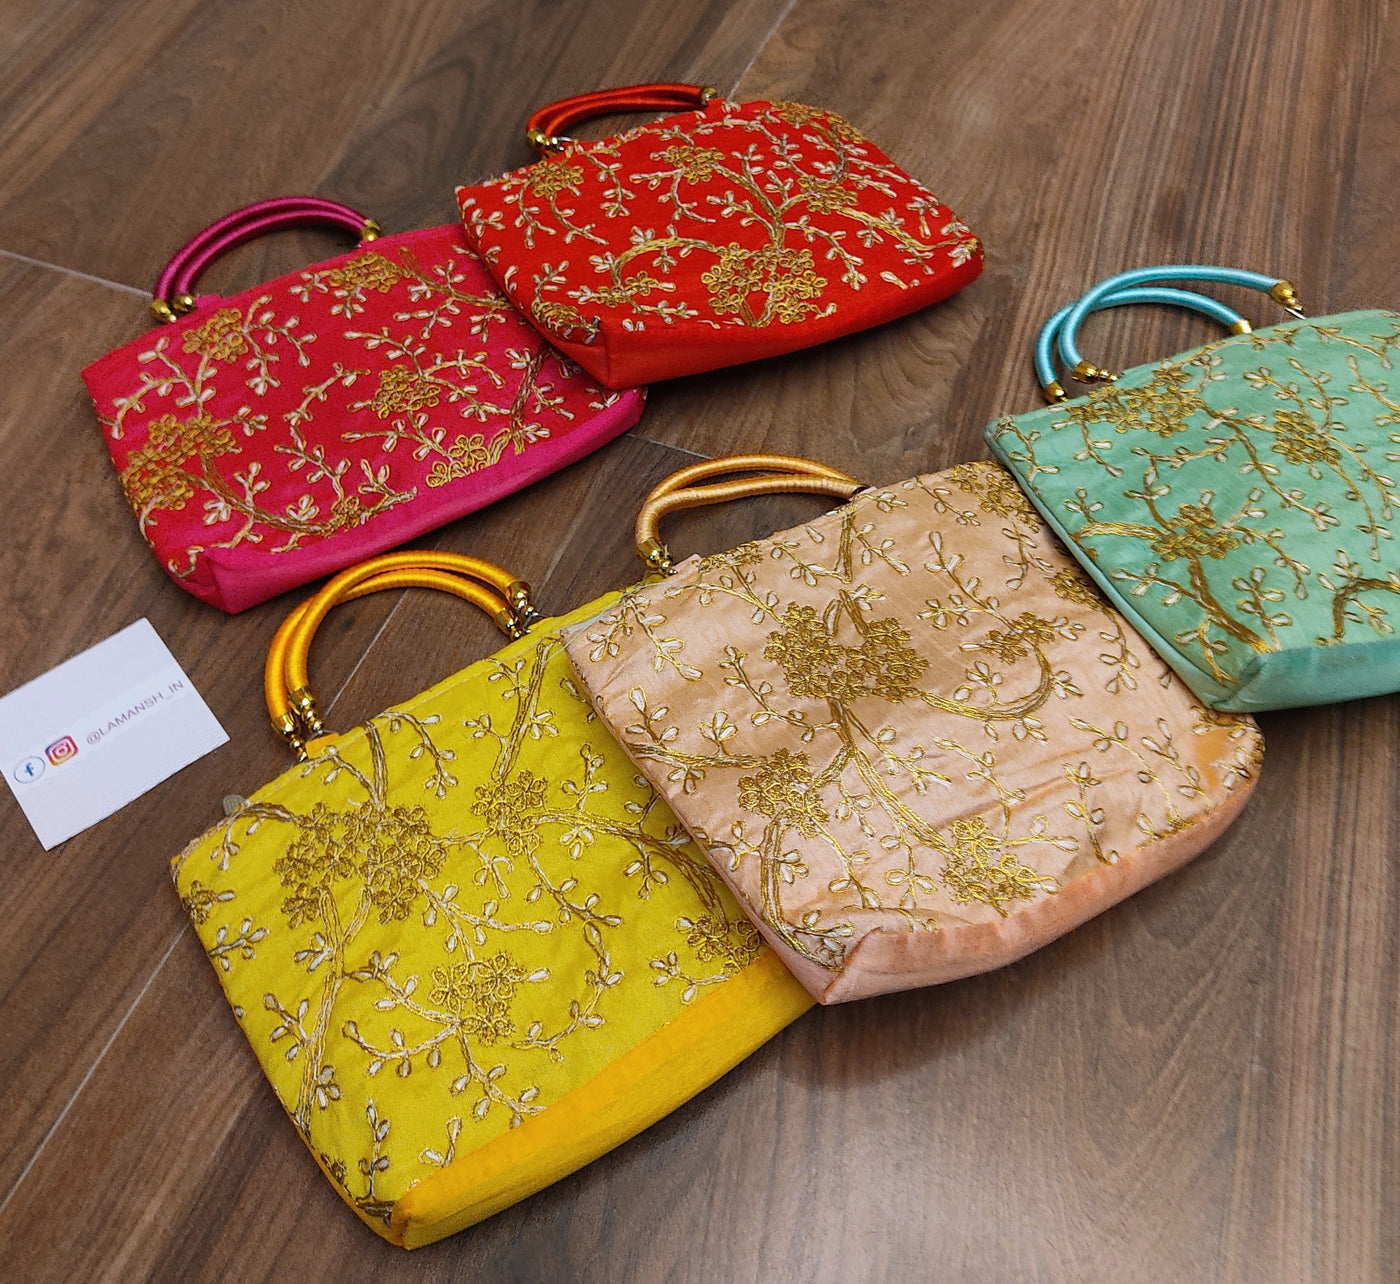 Russian Pavloposadsky Style Handbag Ethnic Floral Purse Gift for Her Violet  Pink Bag Designer Bag Handmade Russian Style Bag - Etsy